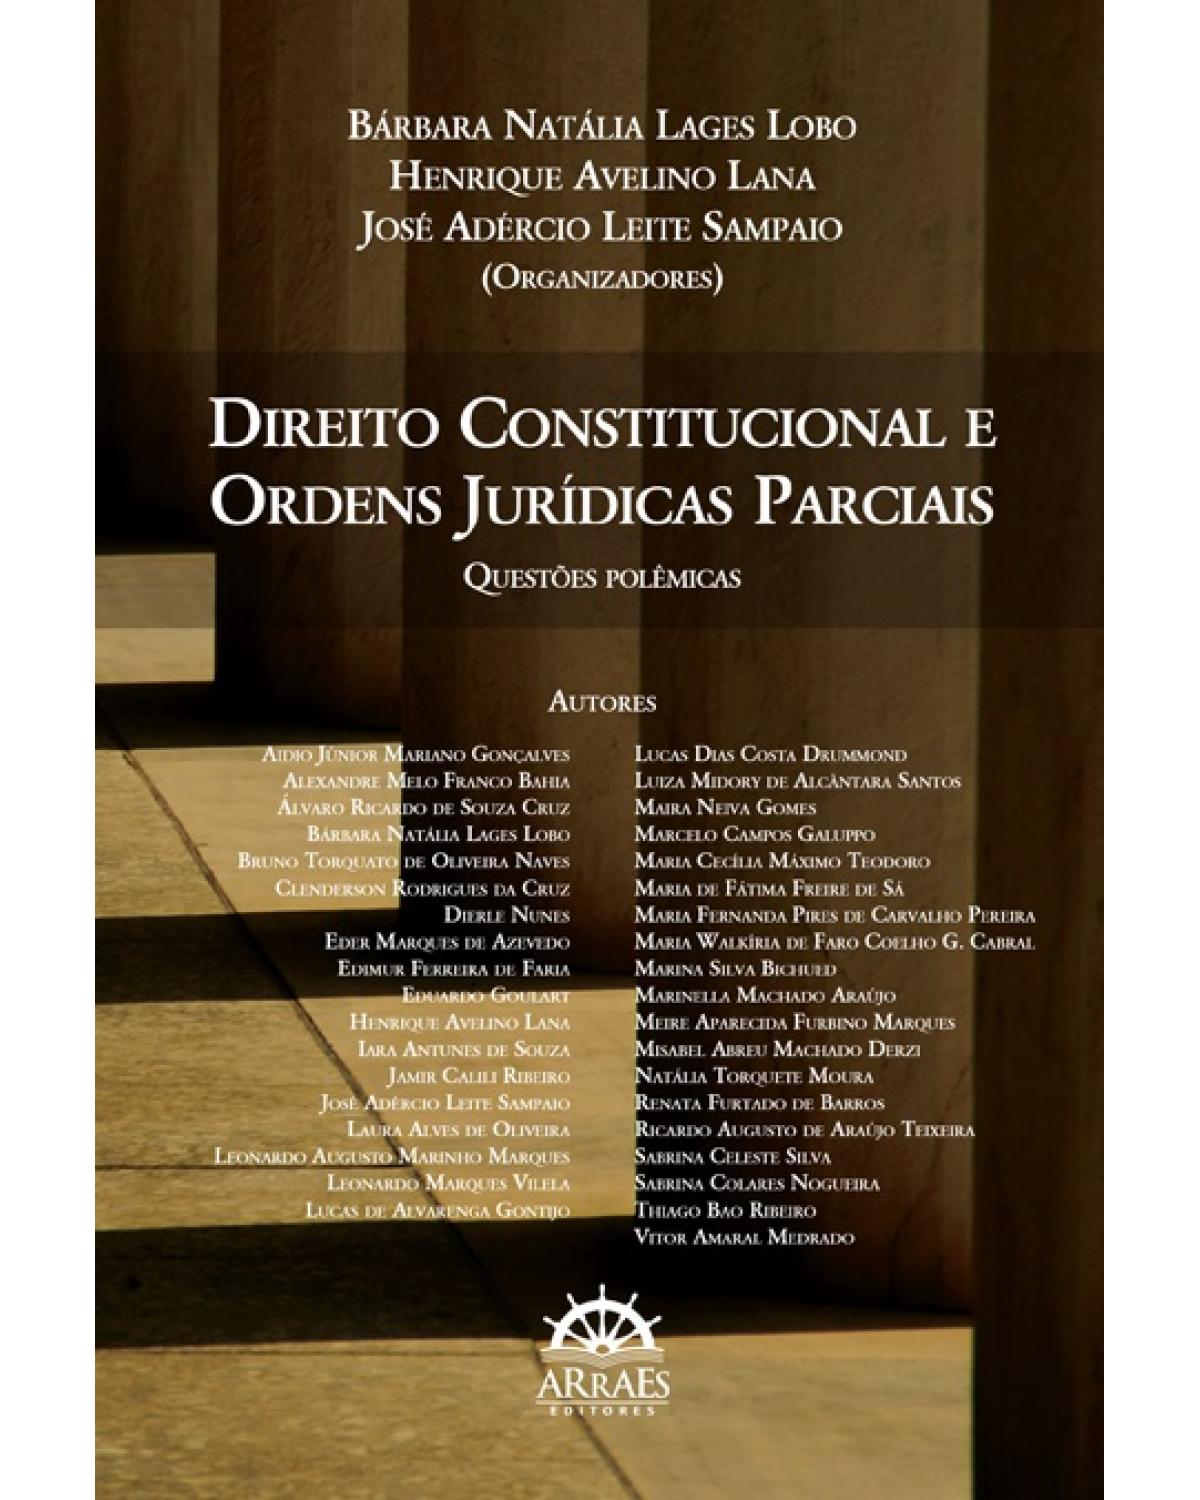 Direito constitucional e ordens jurídicas parciais - questões polêmicas - 1ª Edição | 2017